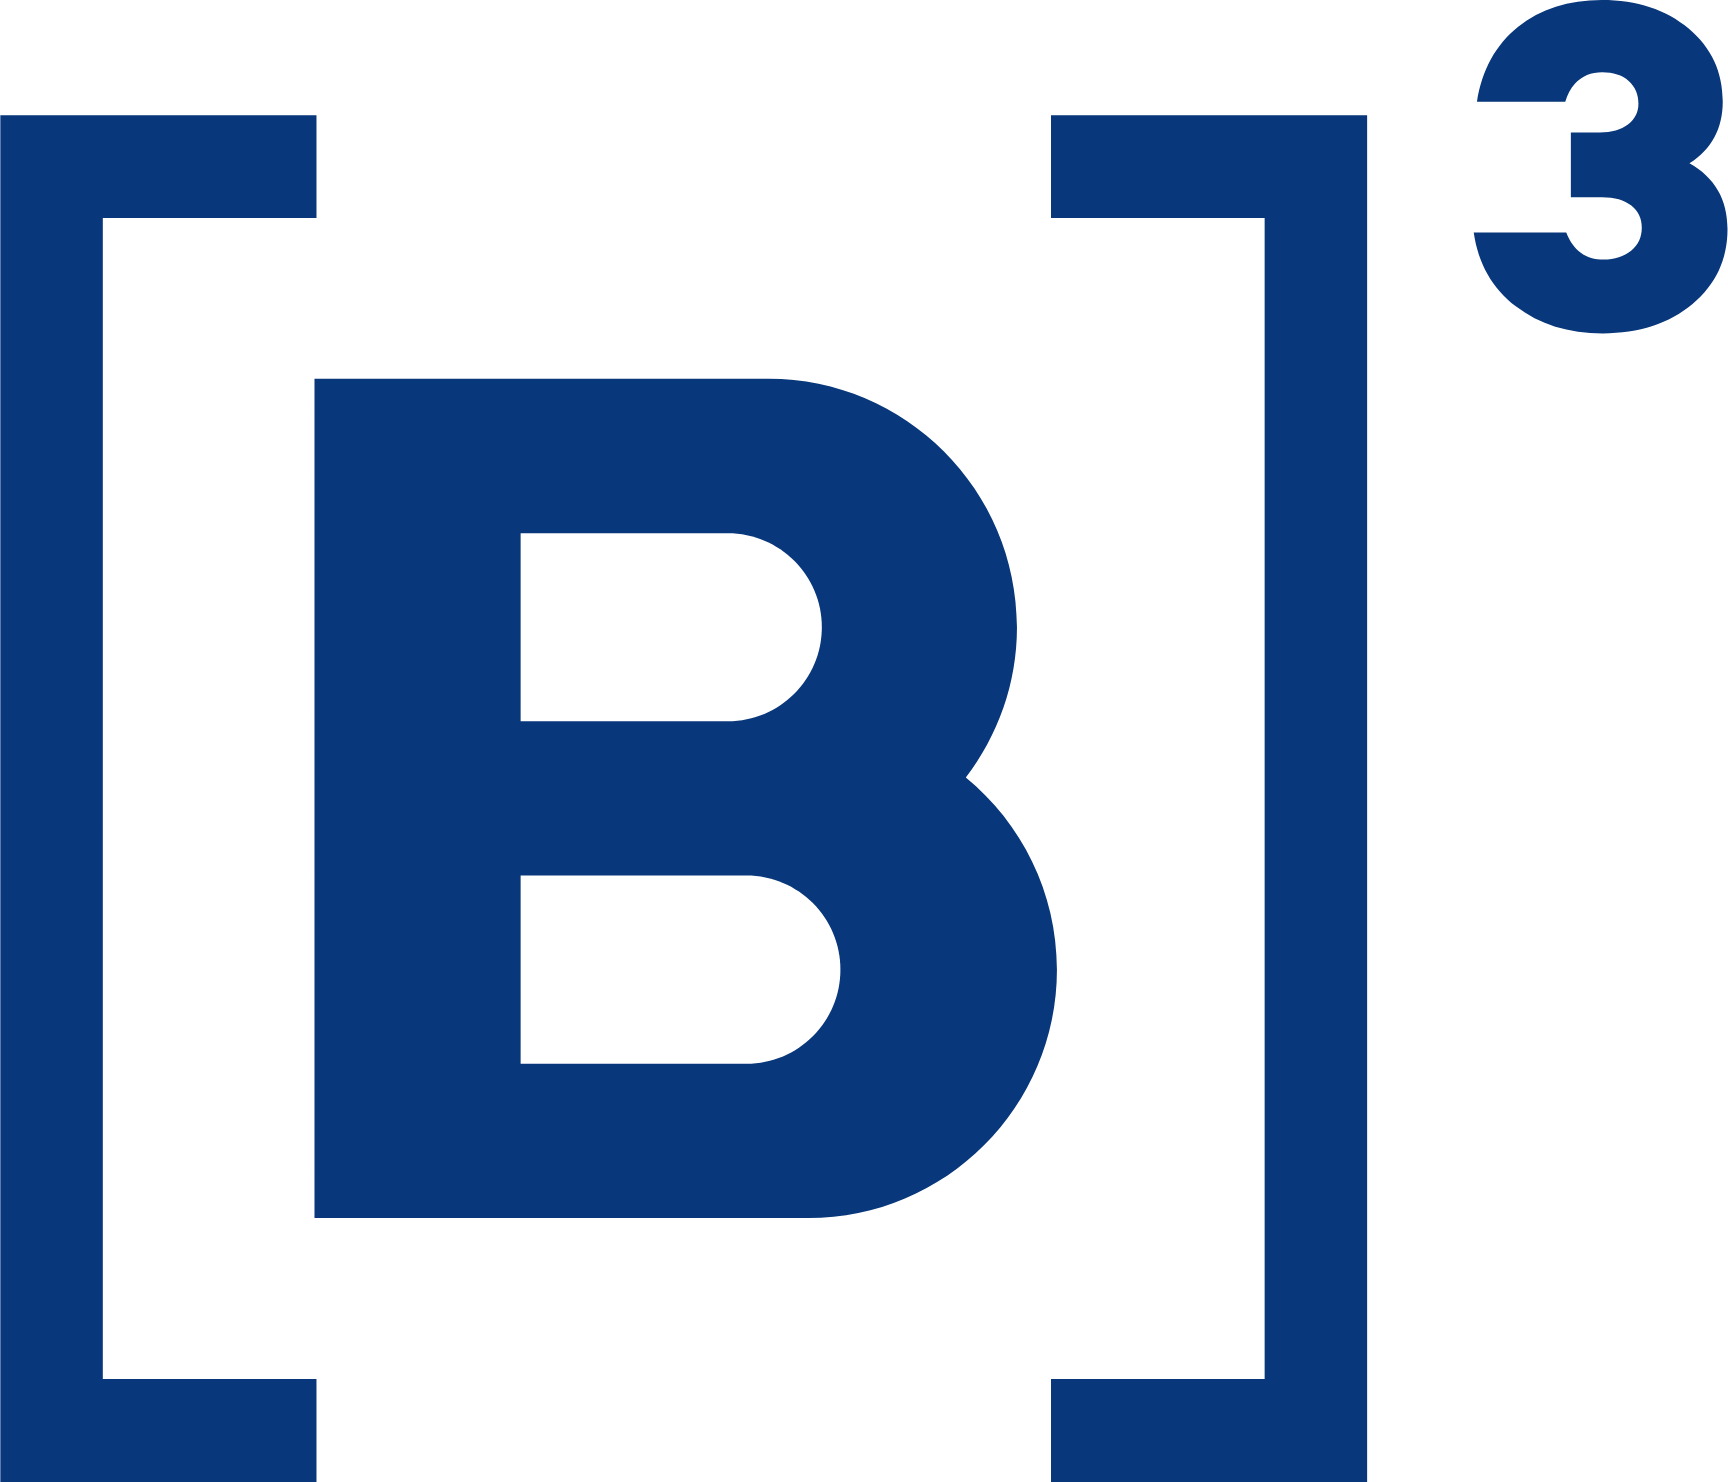 B3 logo (PNG transparent)